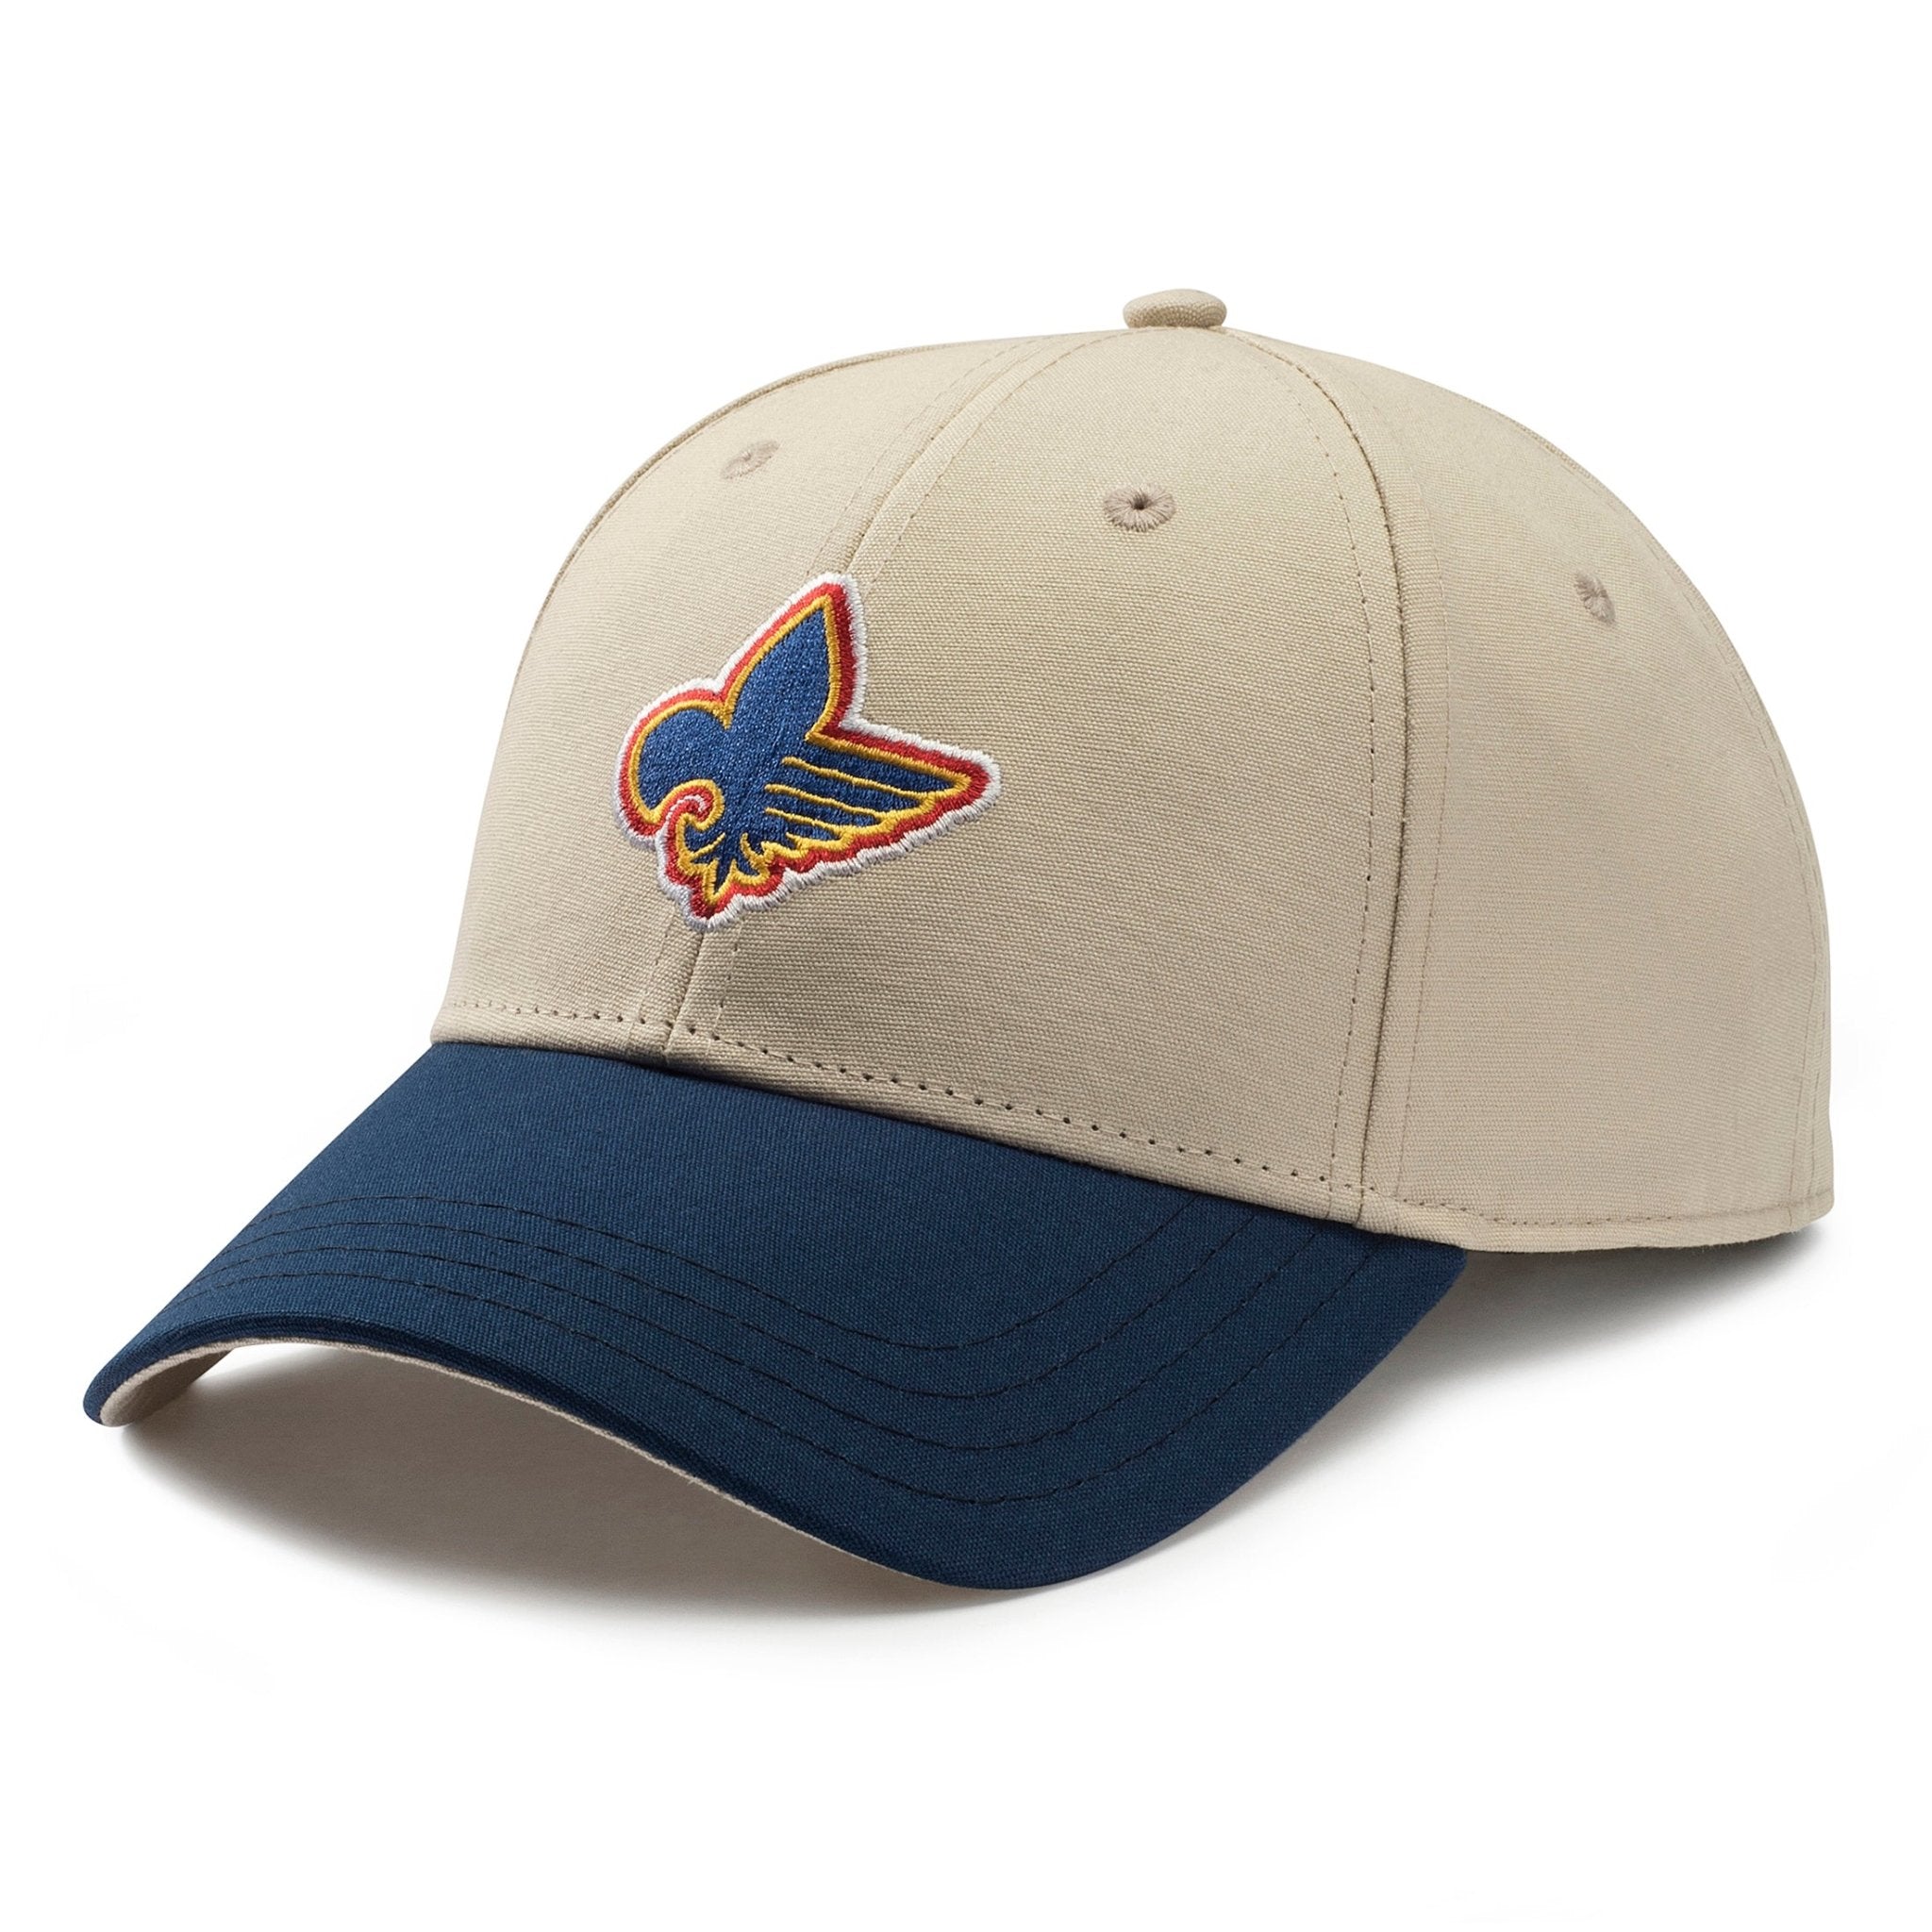 St. Louis Blues '47 Vintage Classic Franchise Flex Hat - Blue